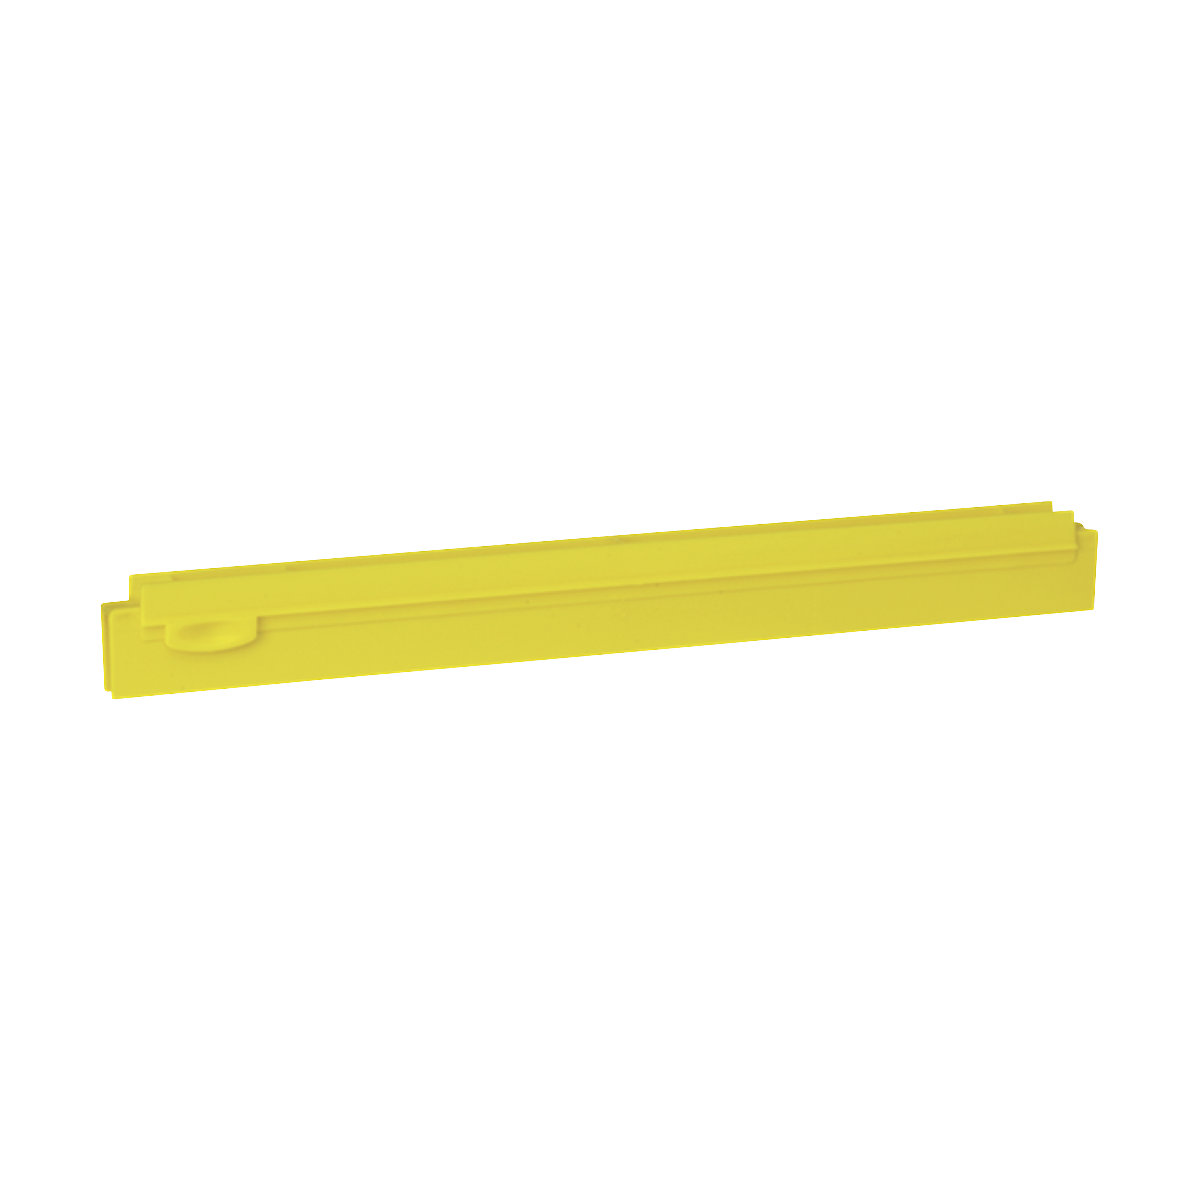 Zamjenska kaseta, higijenska – Vikan, dužina 400 mm, pak. 10 kom., u žutoj boji